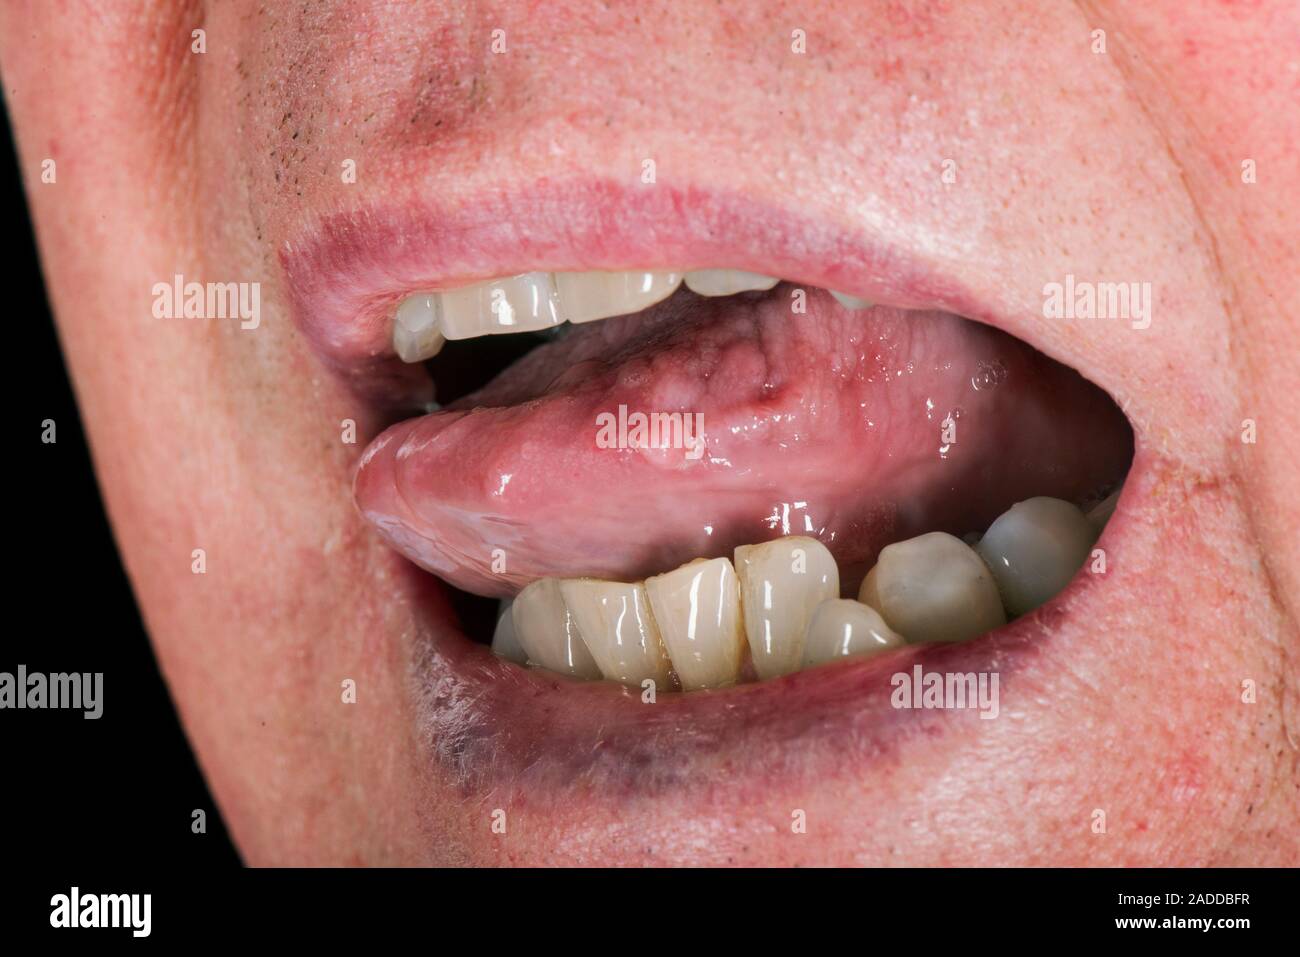 Linguetta verruca. Papilloma (verruca) sul bordo della linguetta di un 70-anno-vecchio uomo. Si tratta di una crescita causata dal virus del papilloma umano (HPV). Ci sono ov Foto Stock